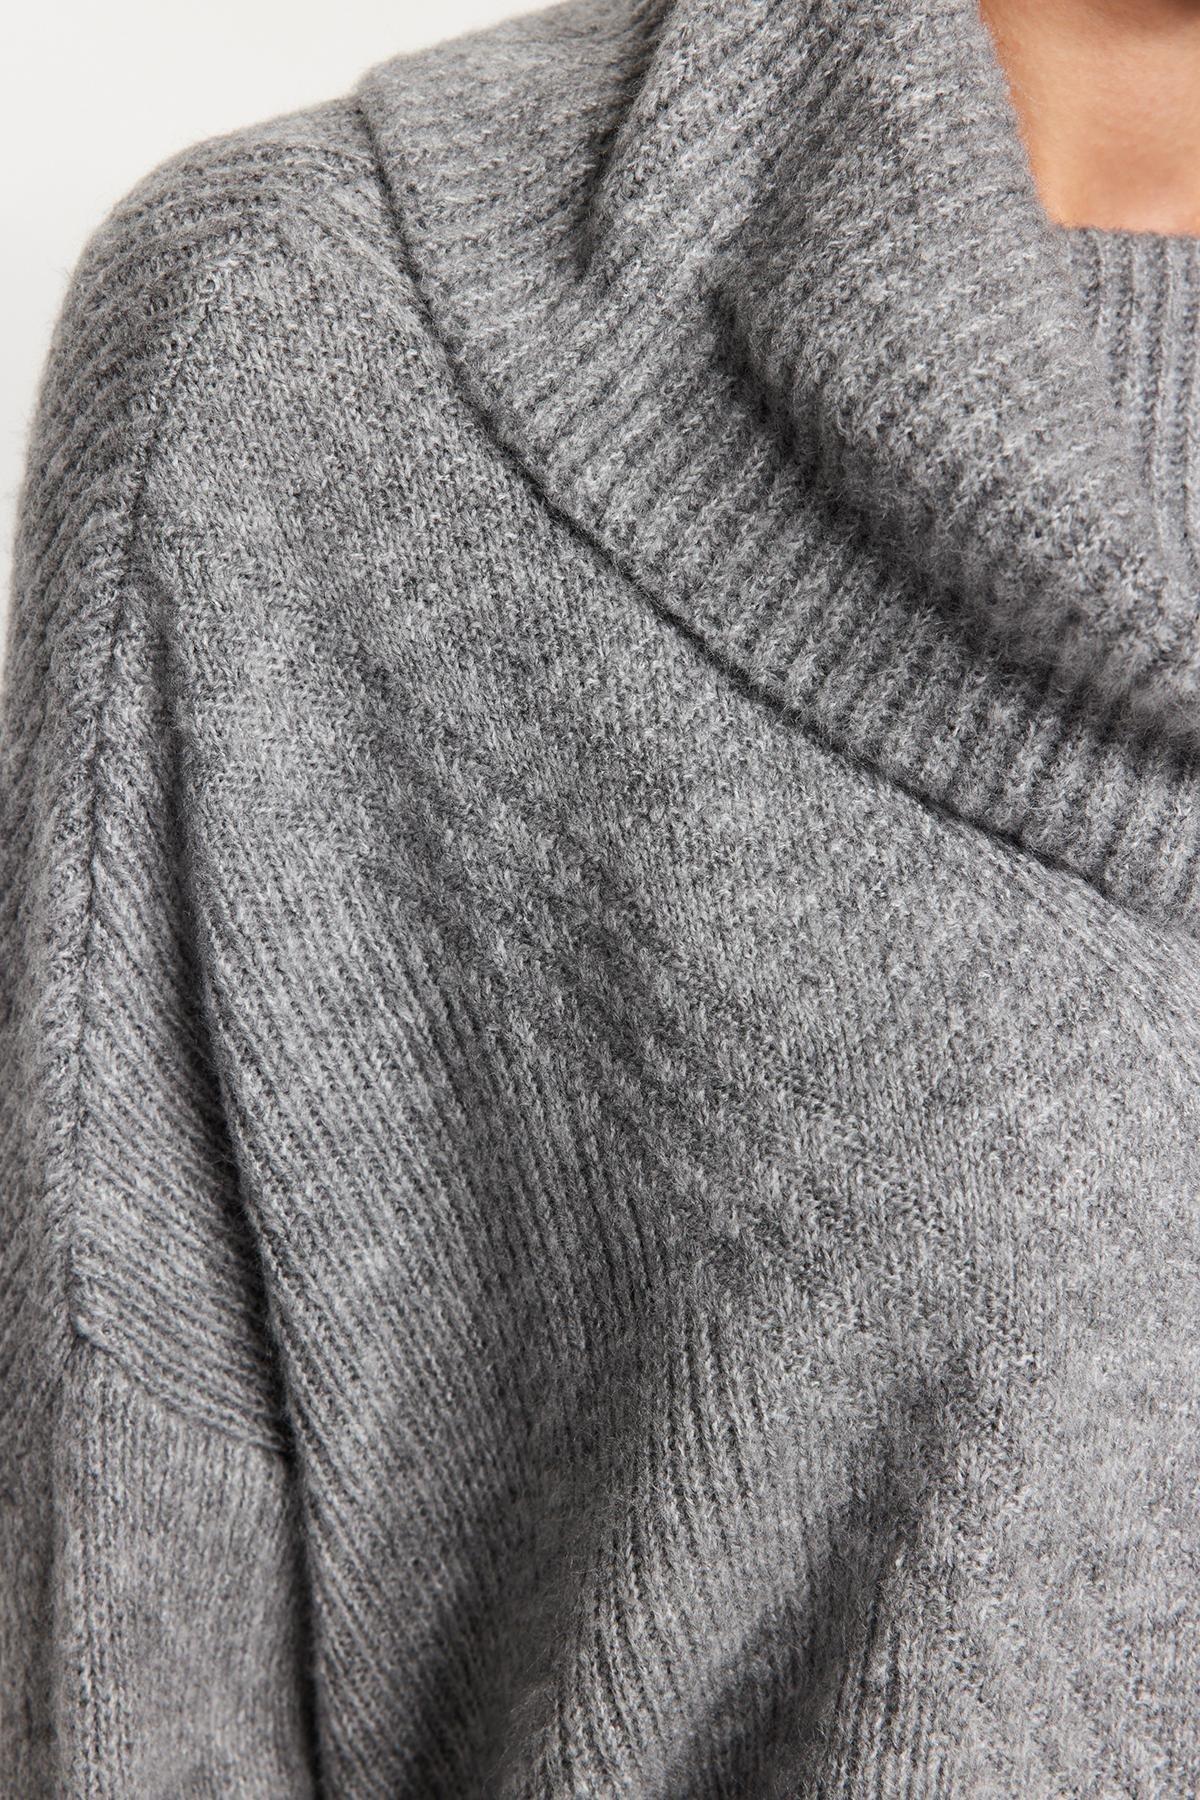 Trendyol - Grey Turtleneck Knitwear Sweater